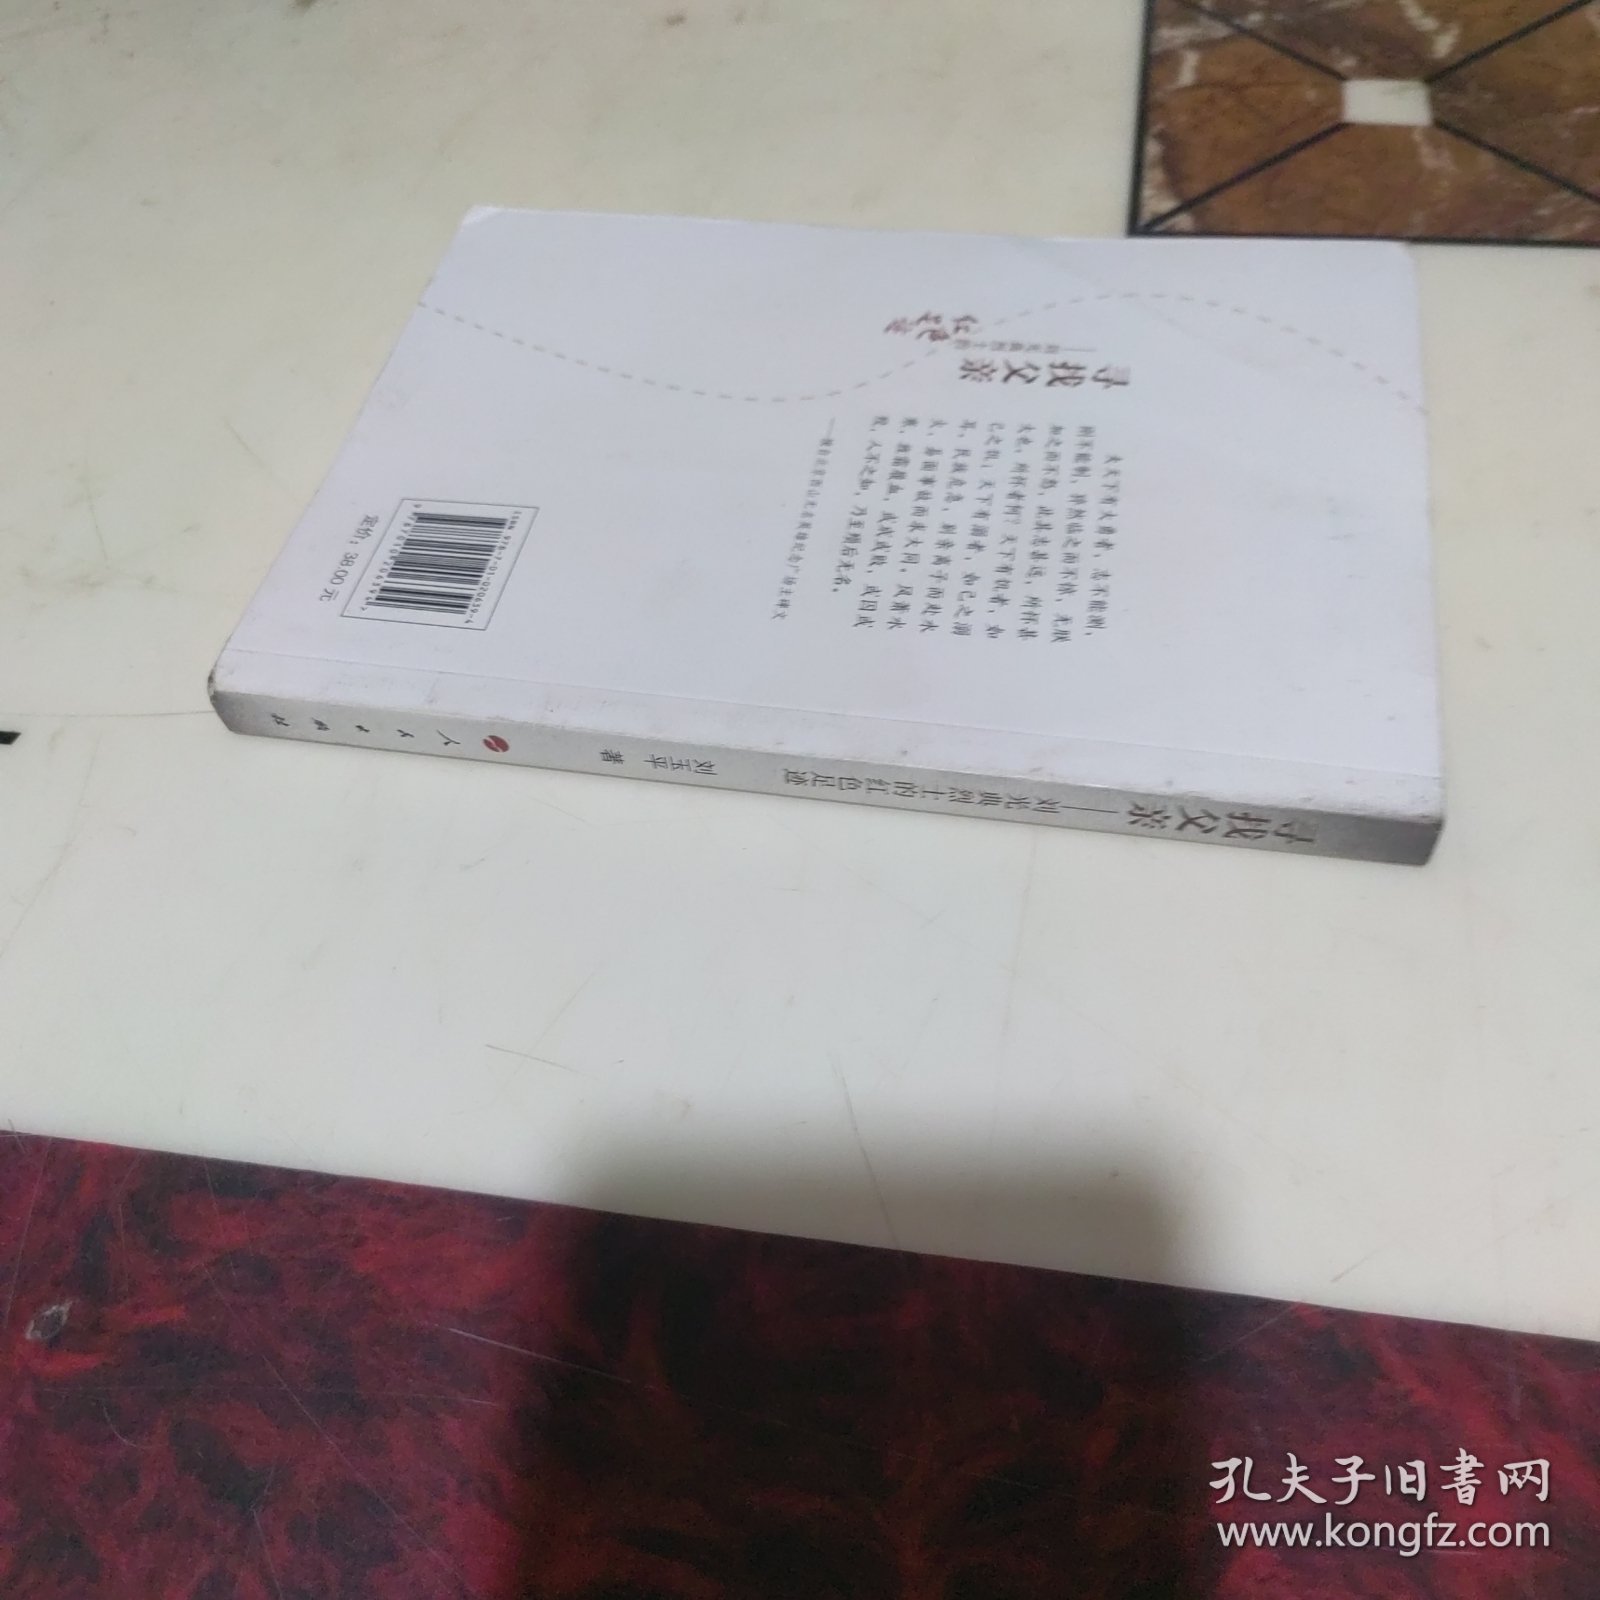 寻找父亲:刘光典烈士的红色足迹 作者签名本